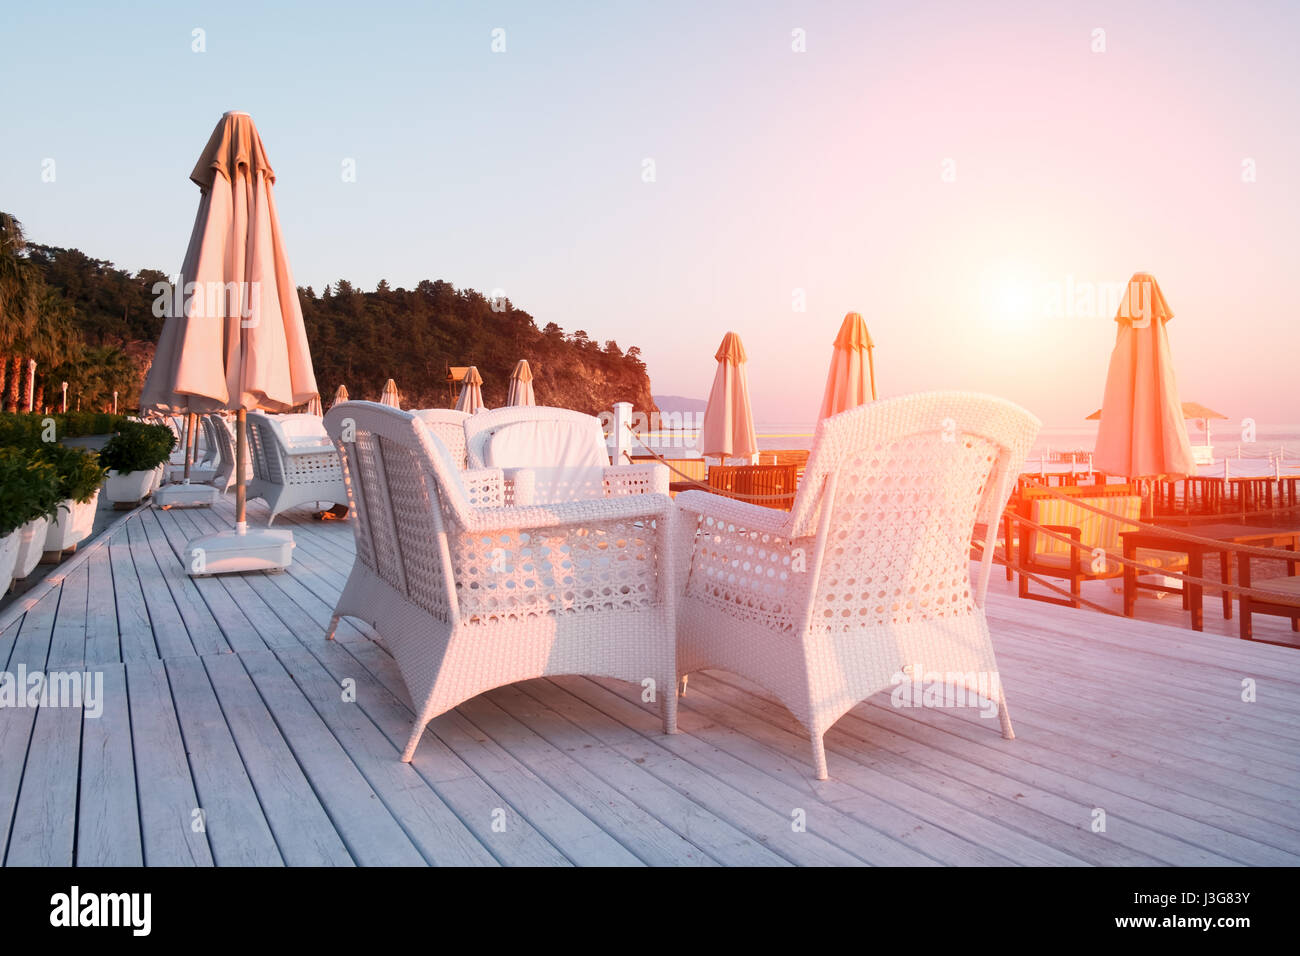 Sommer-Restaurant am Strand. Atemberaubenden Blick auf das Mittelmeer. Weiße Holzterrasse und geflochtene Möbel Stockfoto